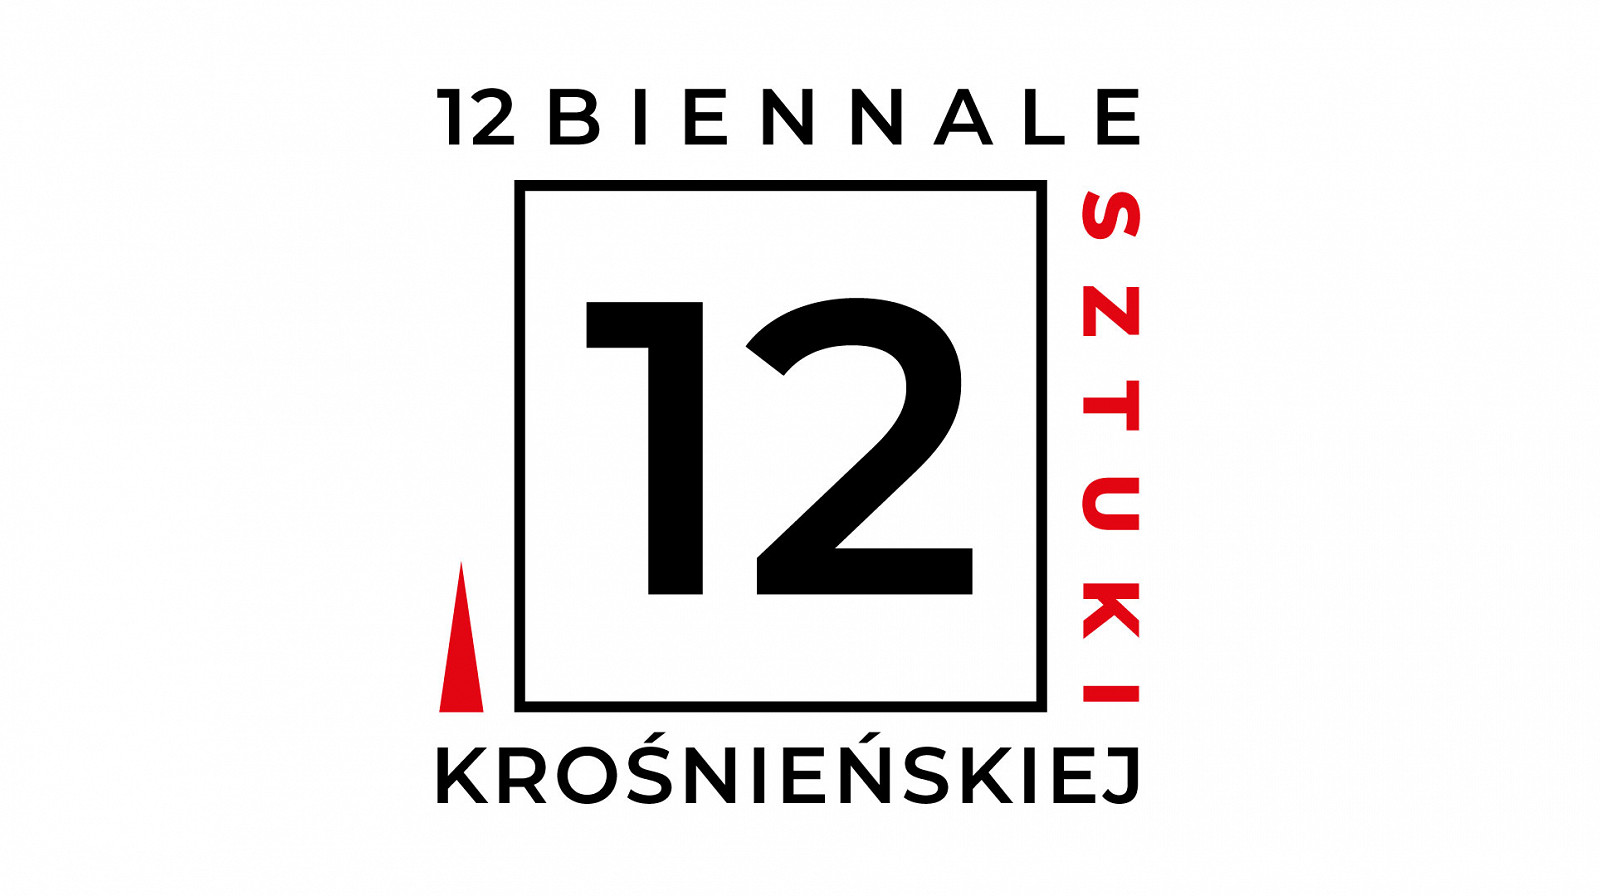 12 Biennale Sztuki Krośnieńskiej.jpg [72.75 KB]